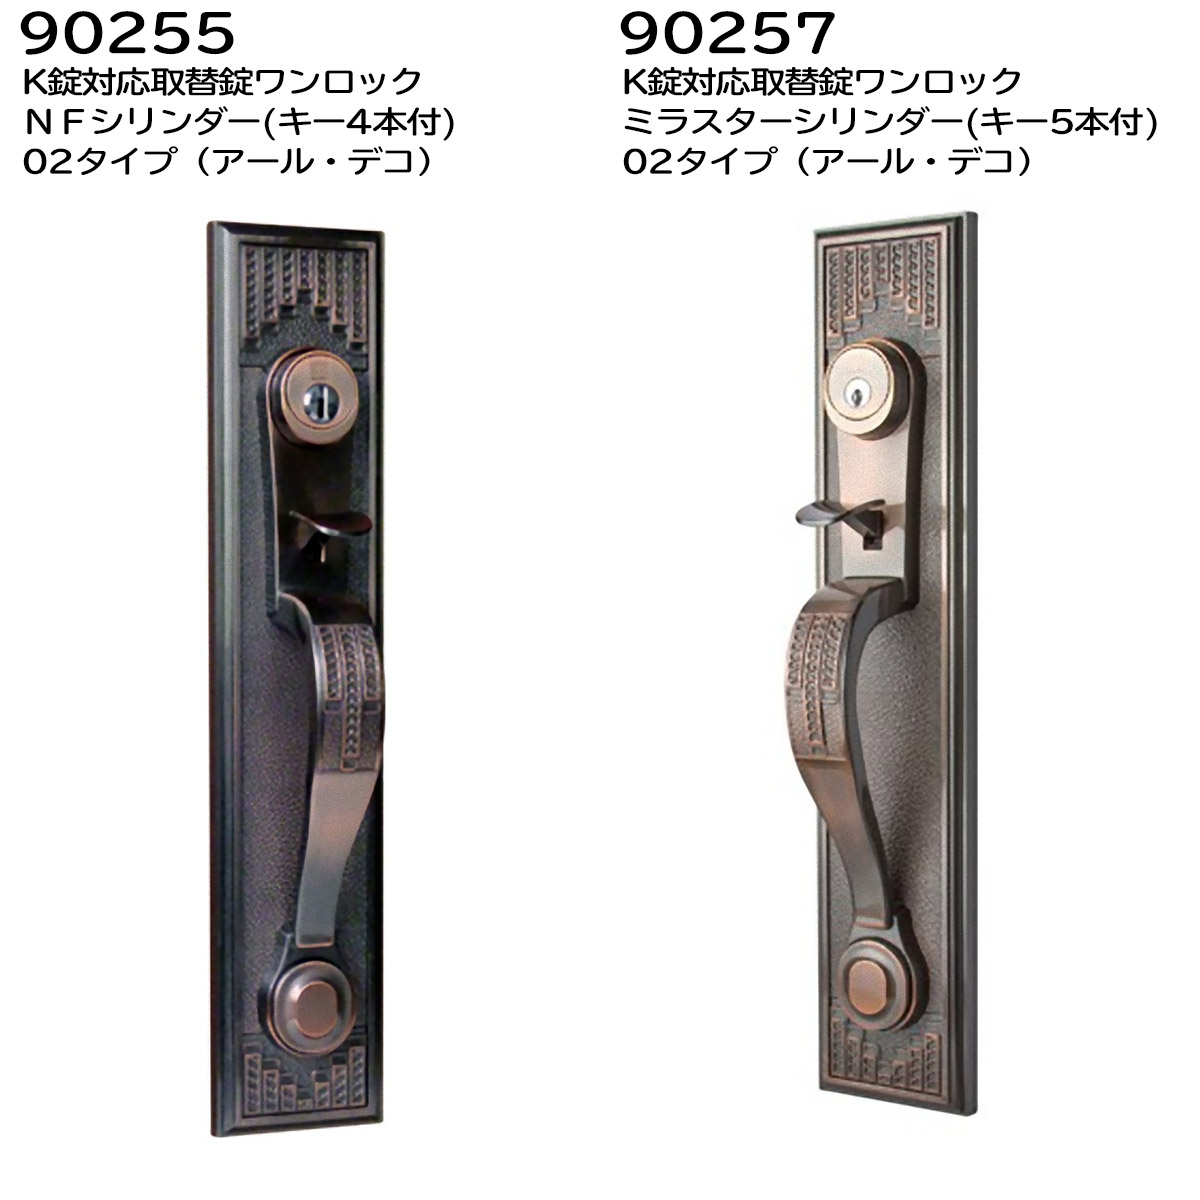 長沢製作所924066古代 サムラッチツーロックケースロック取替錠 AB - 2